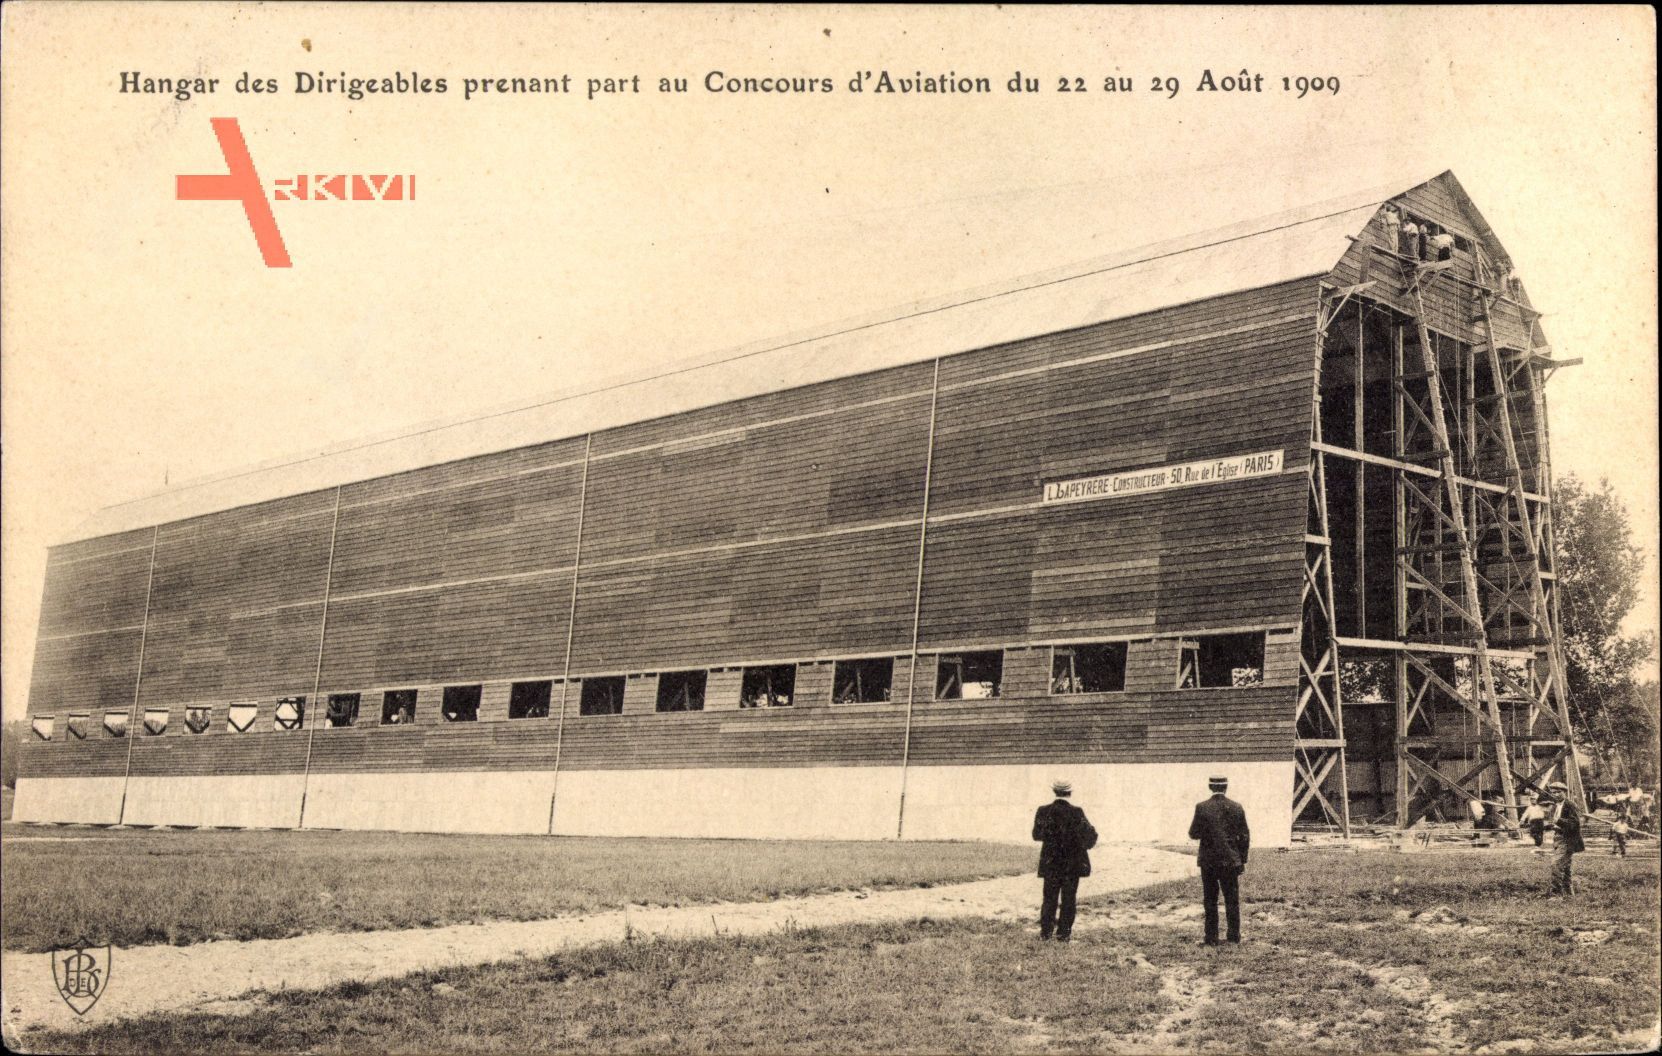 Hangar des Didigéables prenant part au Concours dAviation,22 au 29 Août 1909